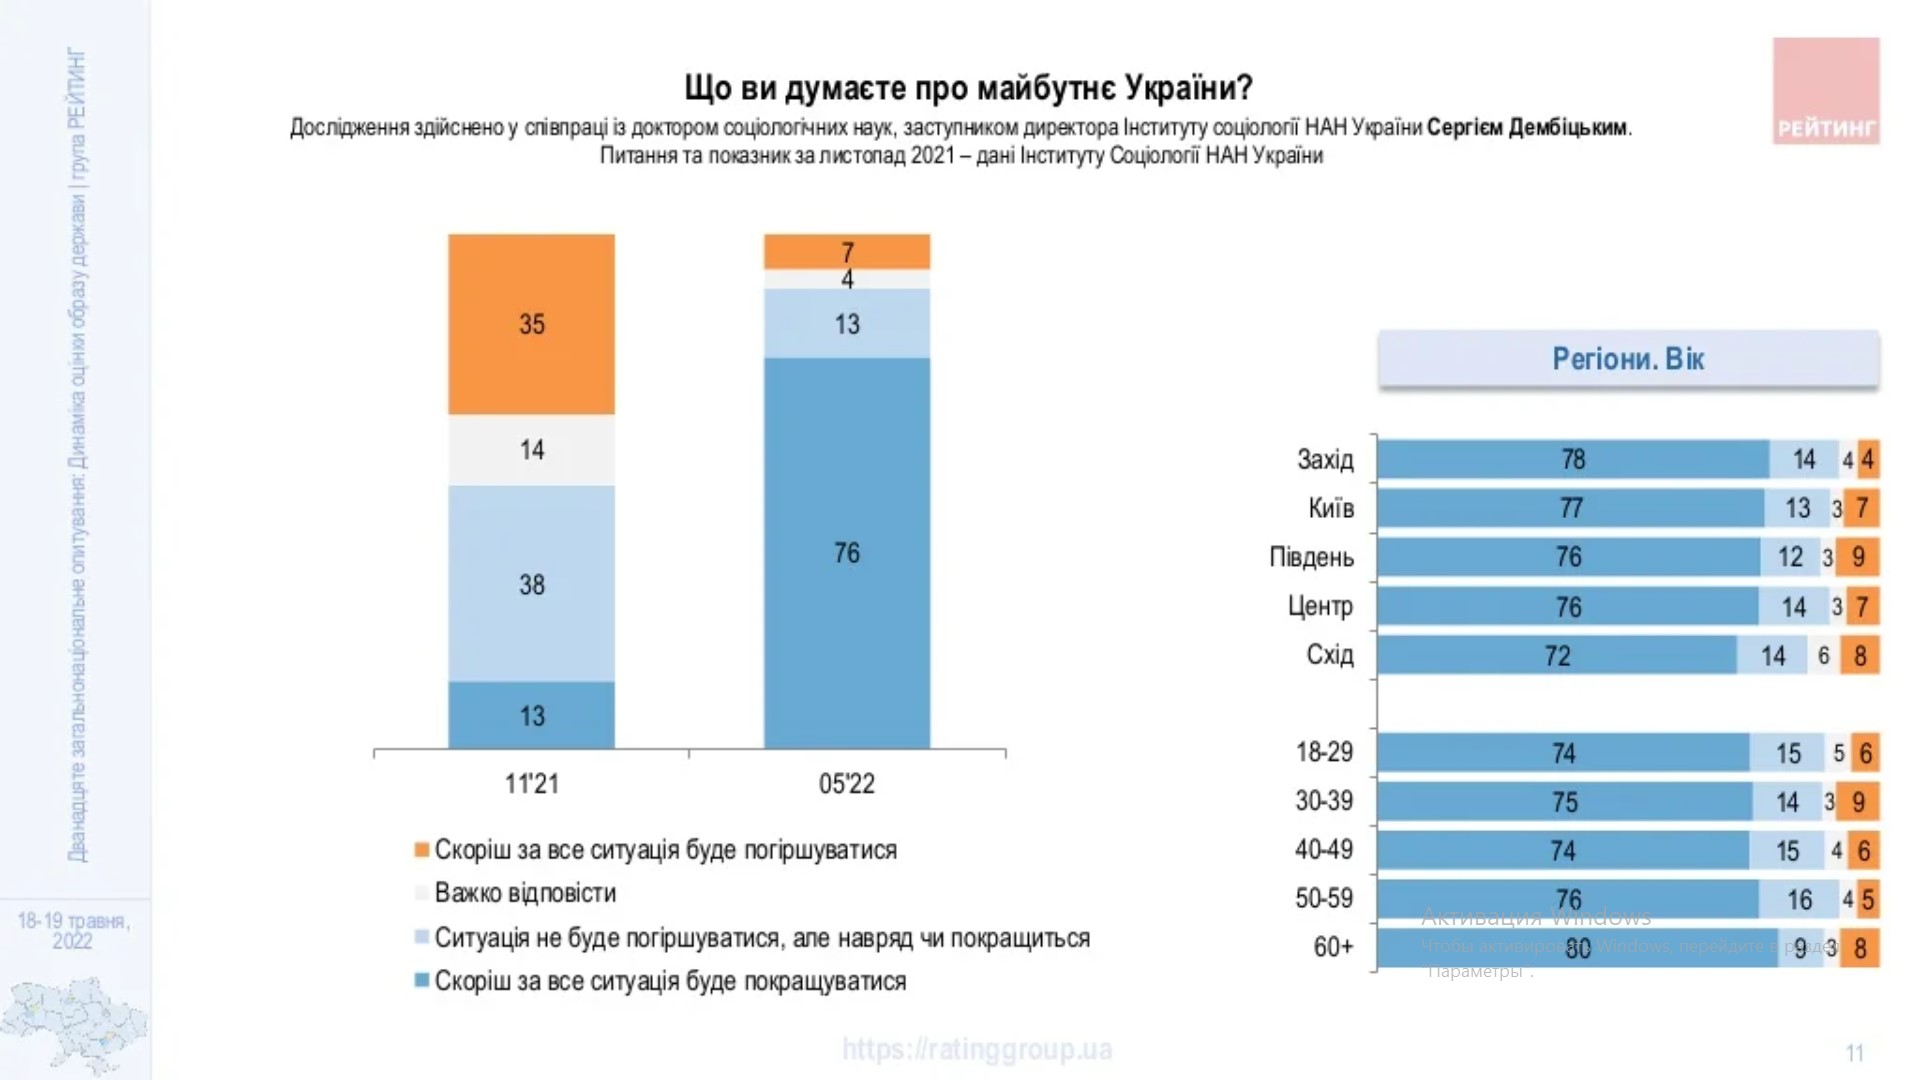 Українці стають оптимістами: у краще майбутнє країни вірять 76% – опитування групи Рейтинг